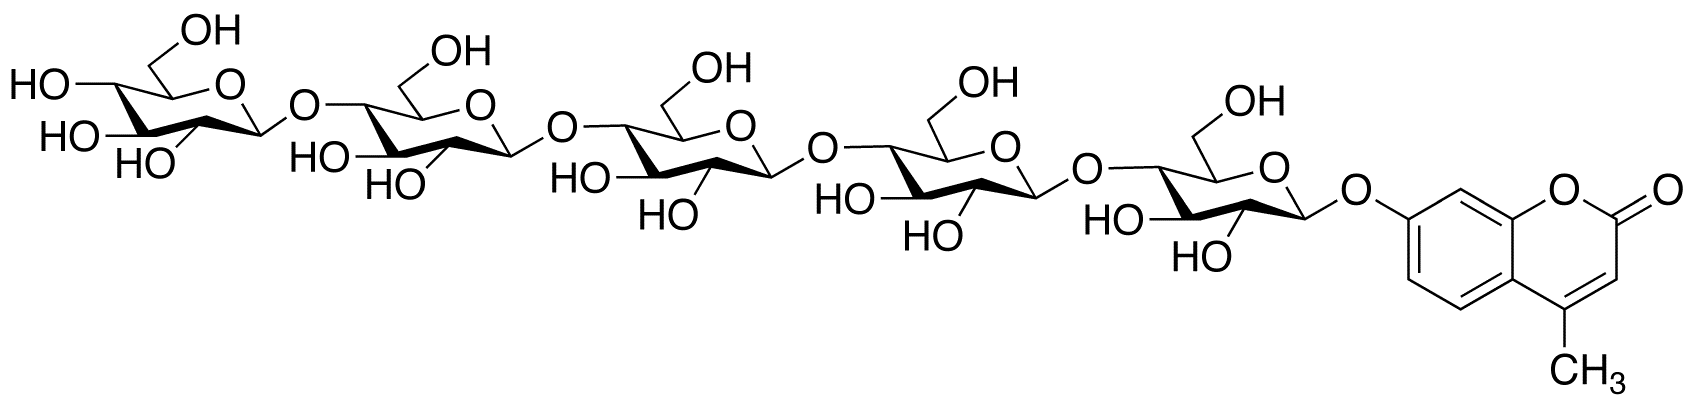 4-Methylumbelliferyl β-D-Cellopentoside